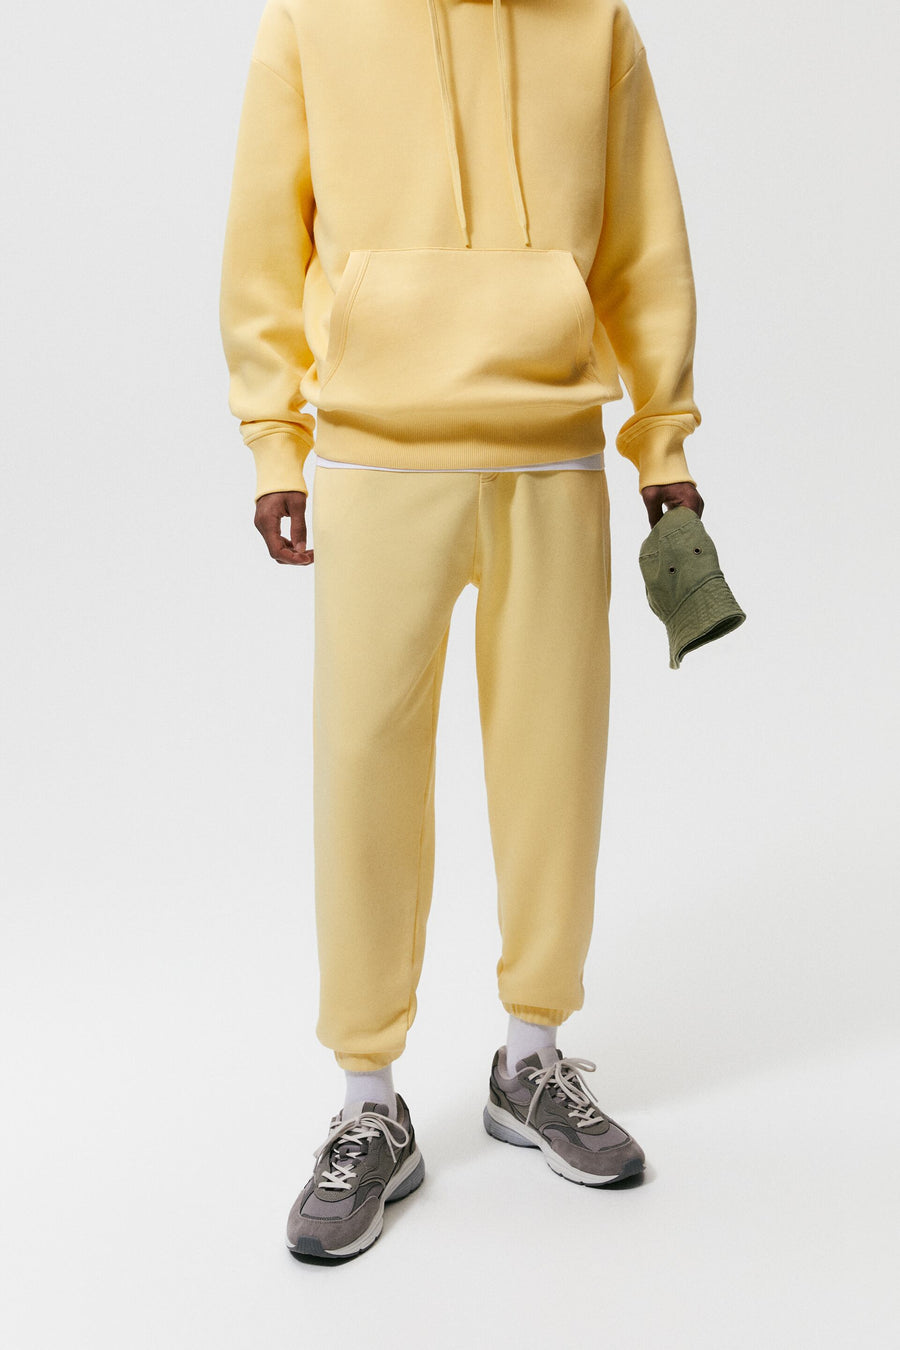 ZaraMan Knitted Jogg L-Terry Trouser 0761/352/321